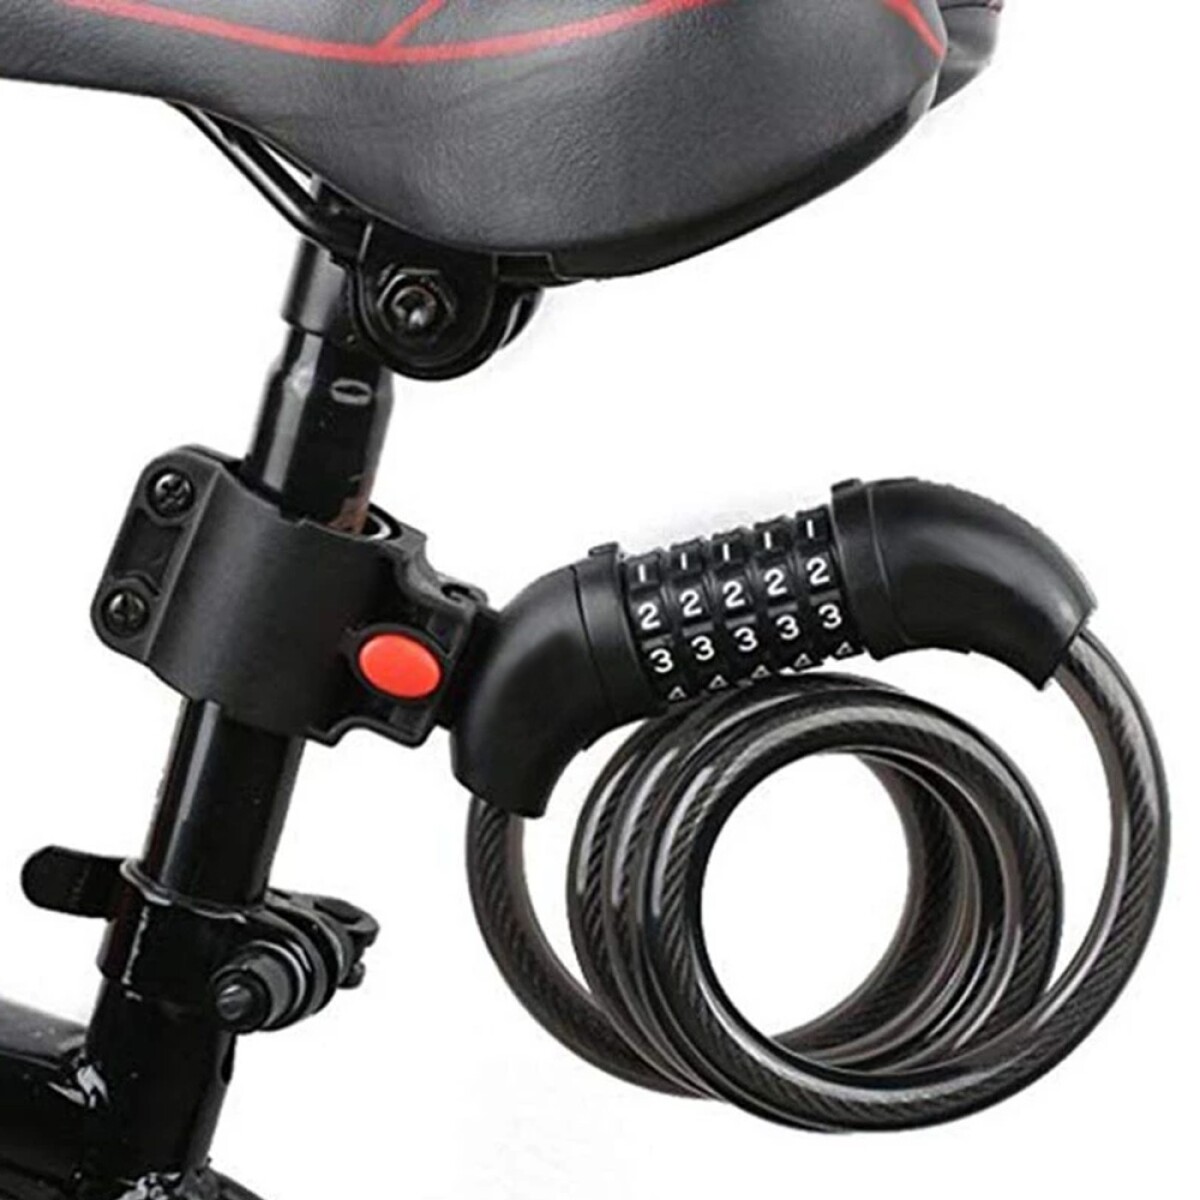 Linga con Candado de Seguridad de Combinación 5 Dígitos para Bicicleta o Moto - Negro 